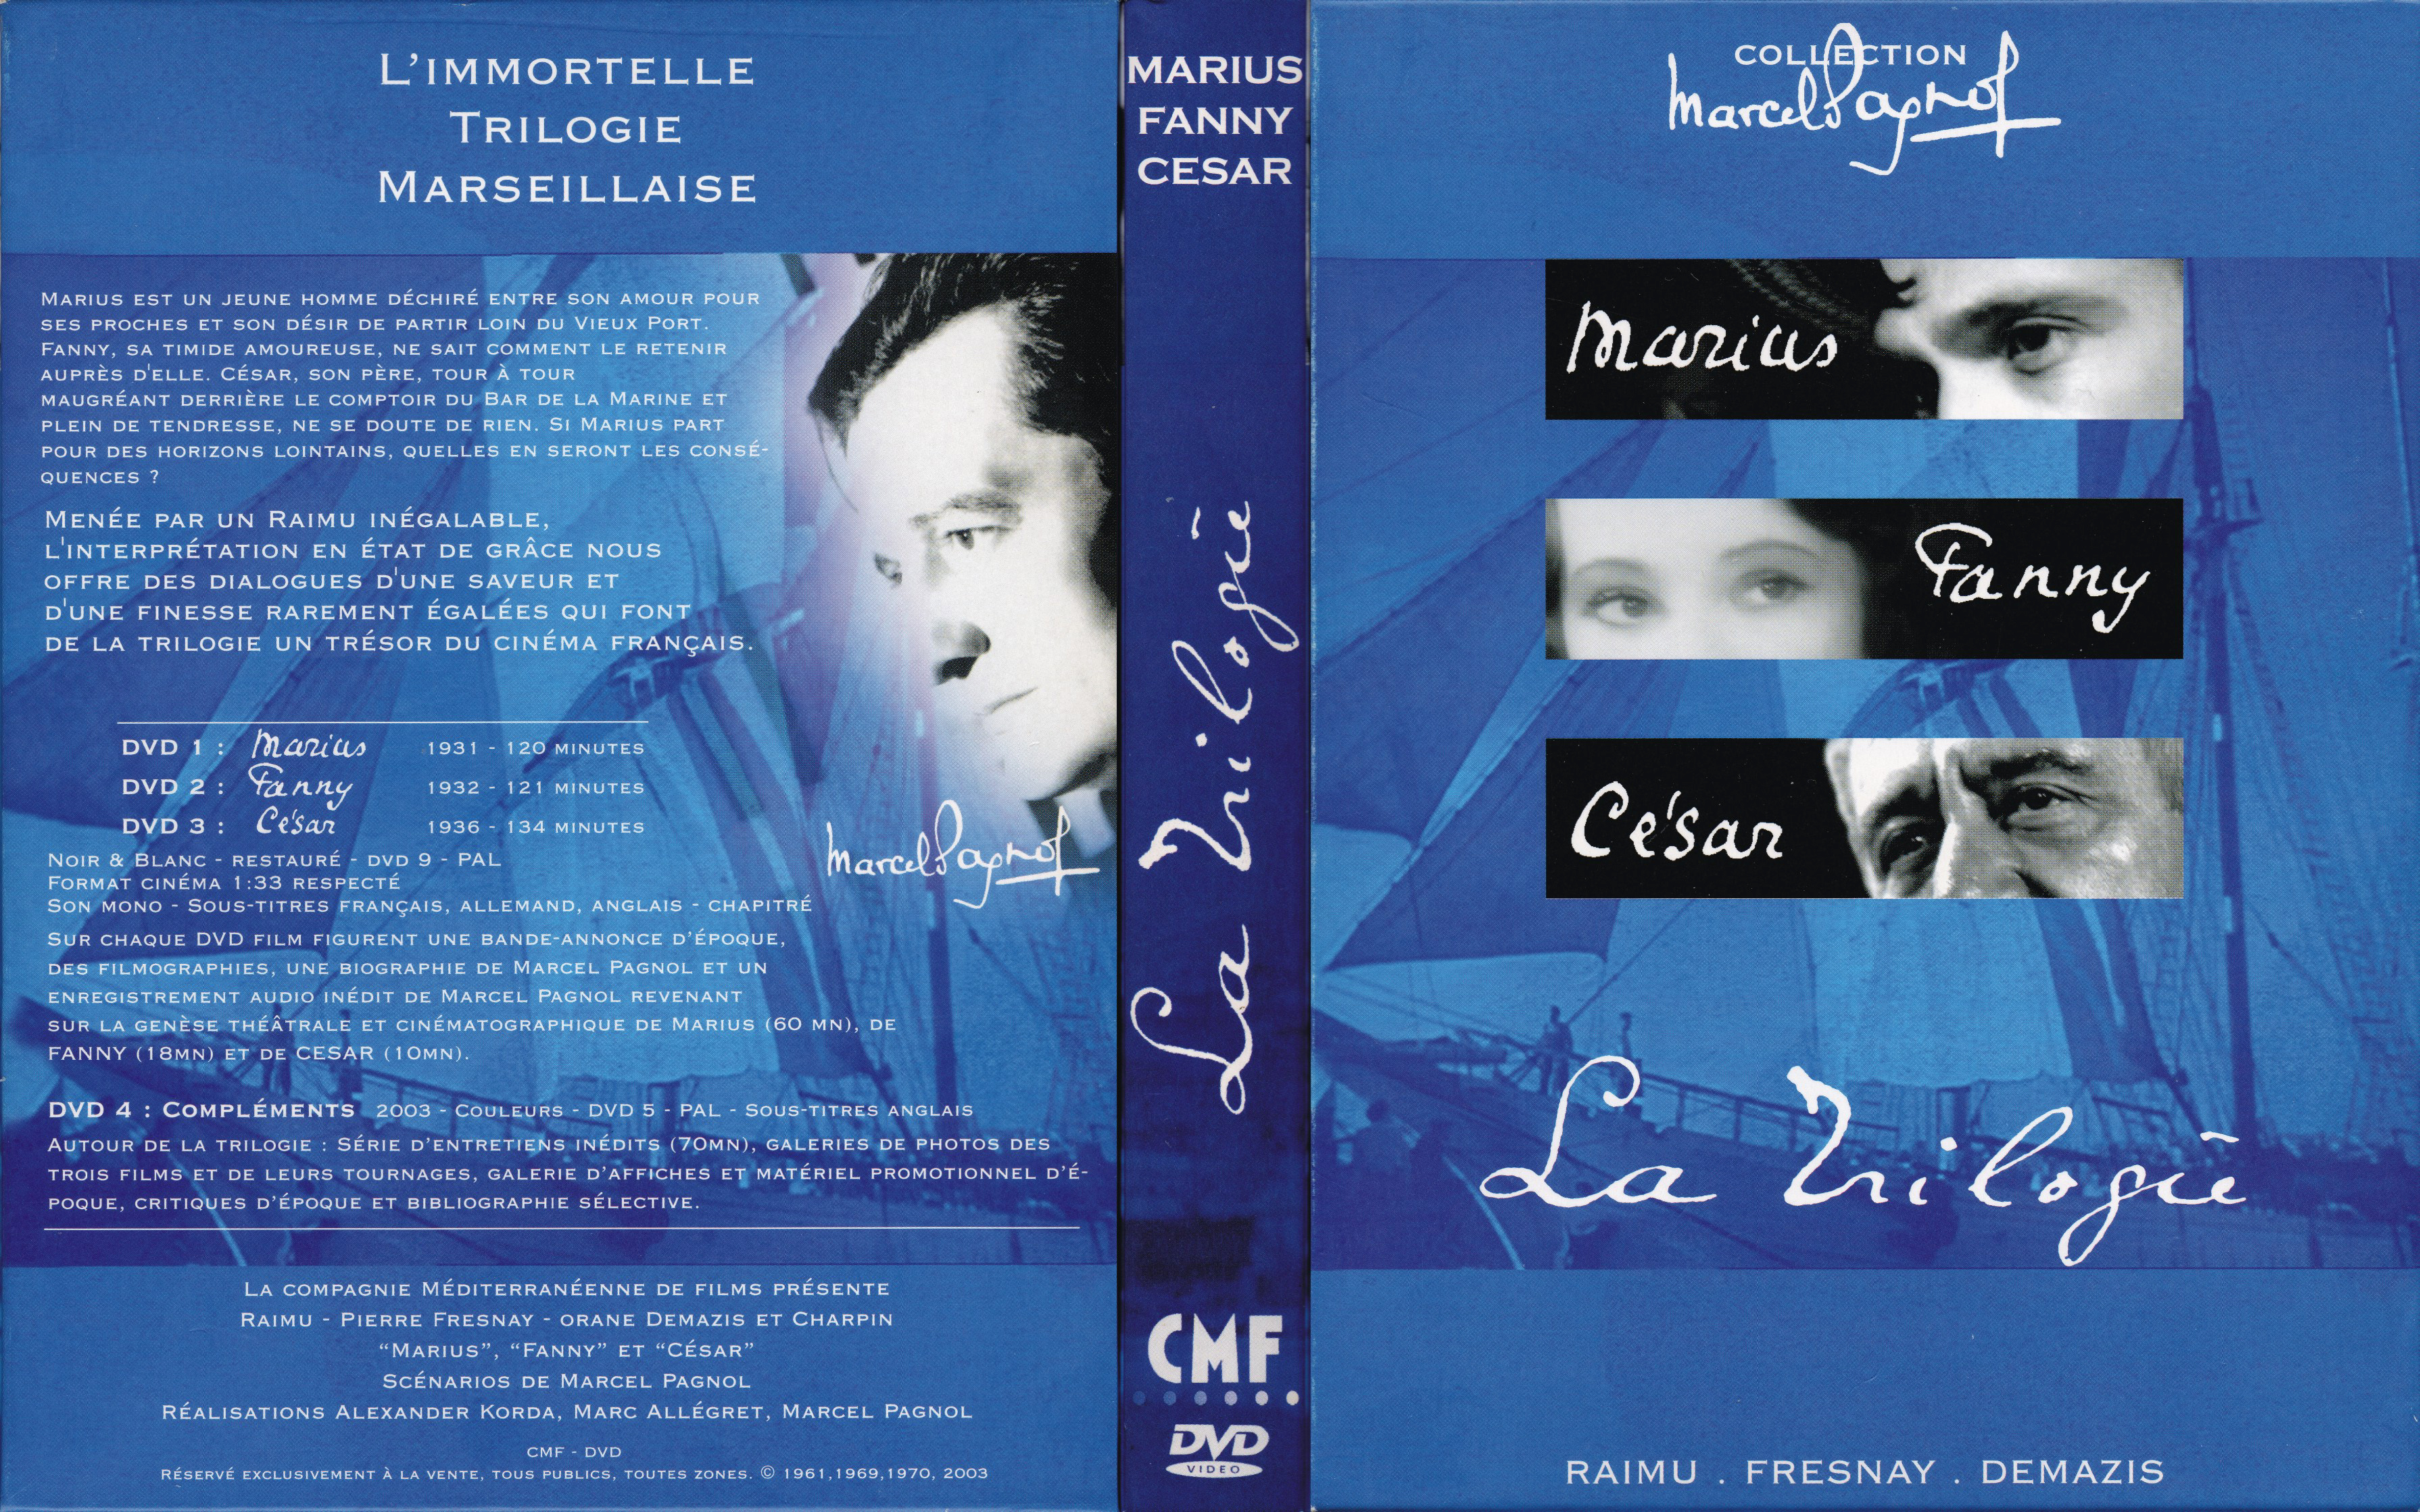 Jaquette DVD Marius - Fanny - Csar - La Trilogie